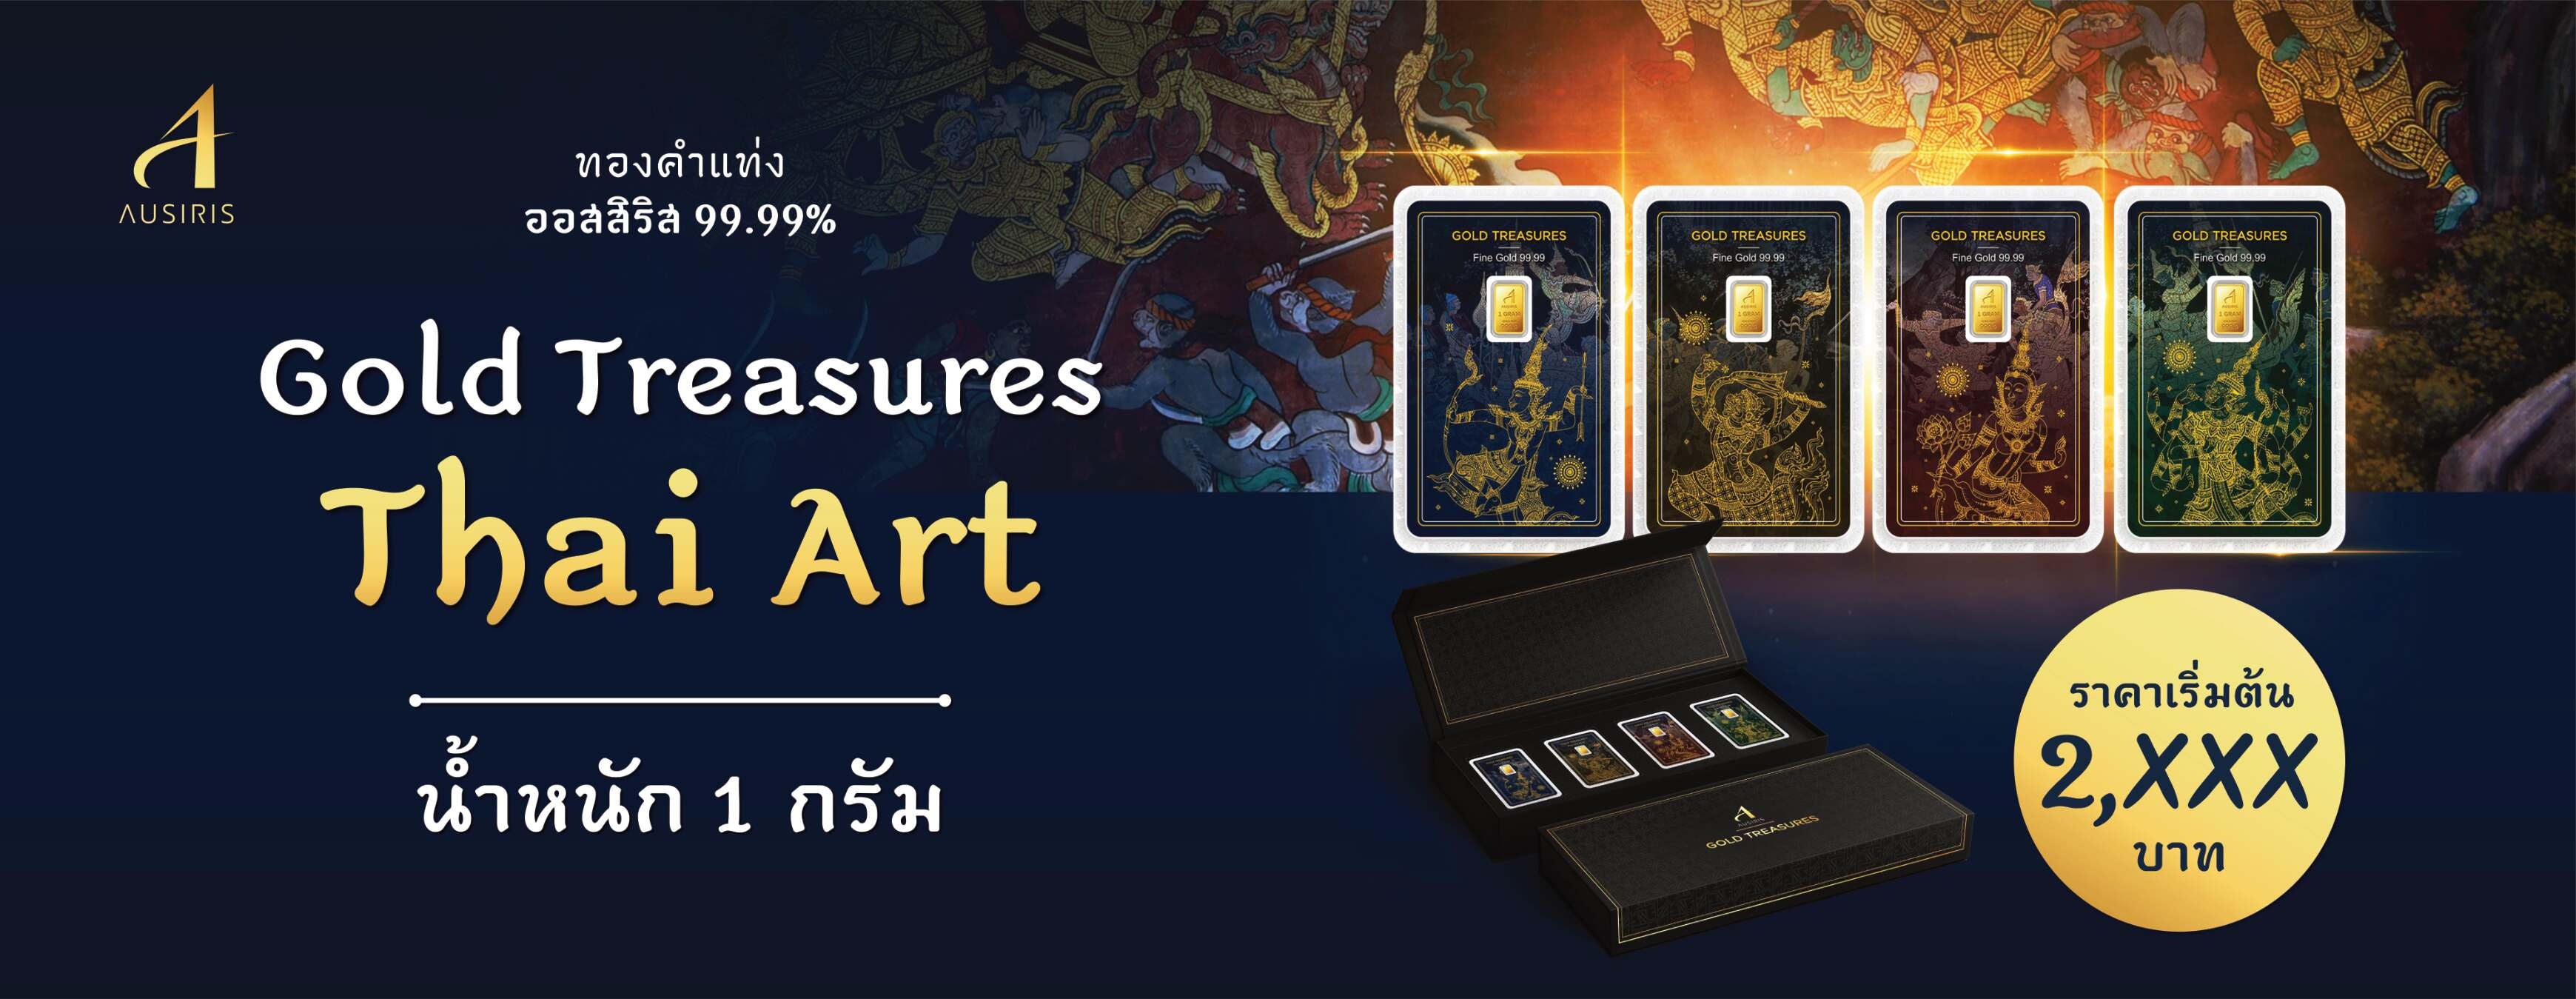 Thai Gold Thai Art